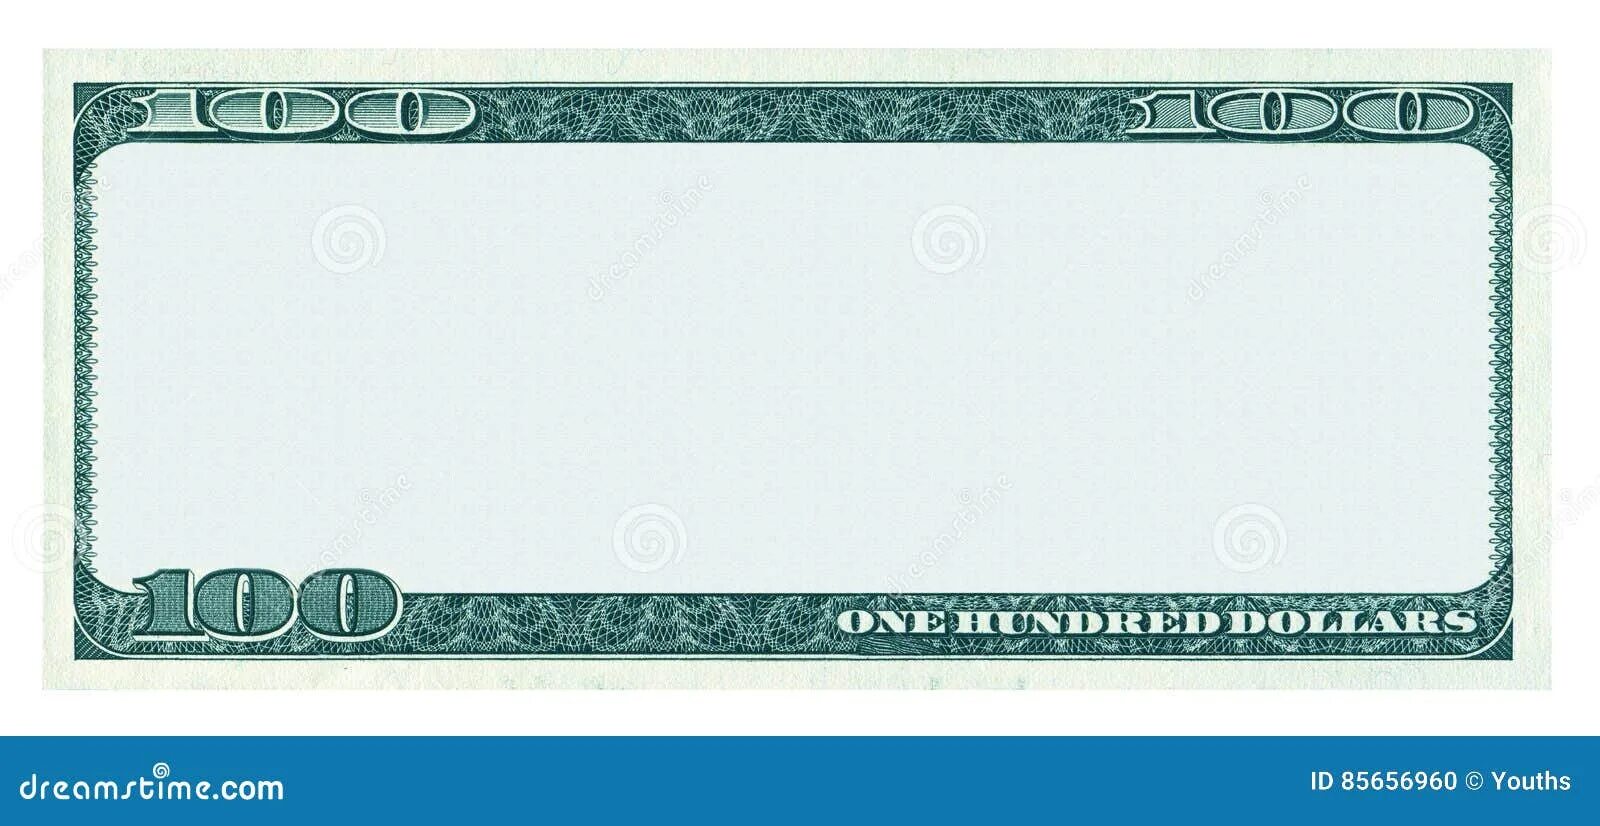 T me blank banknotes. Рамка для купюры. Купюра макет пустая. Рамка для денежной купюры. Доллар в рамке.